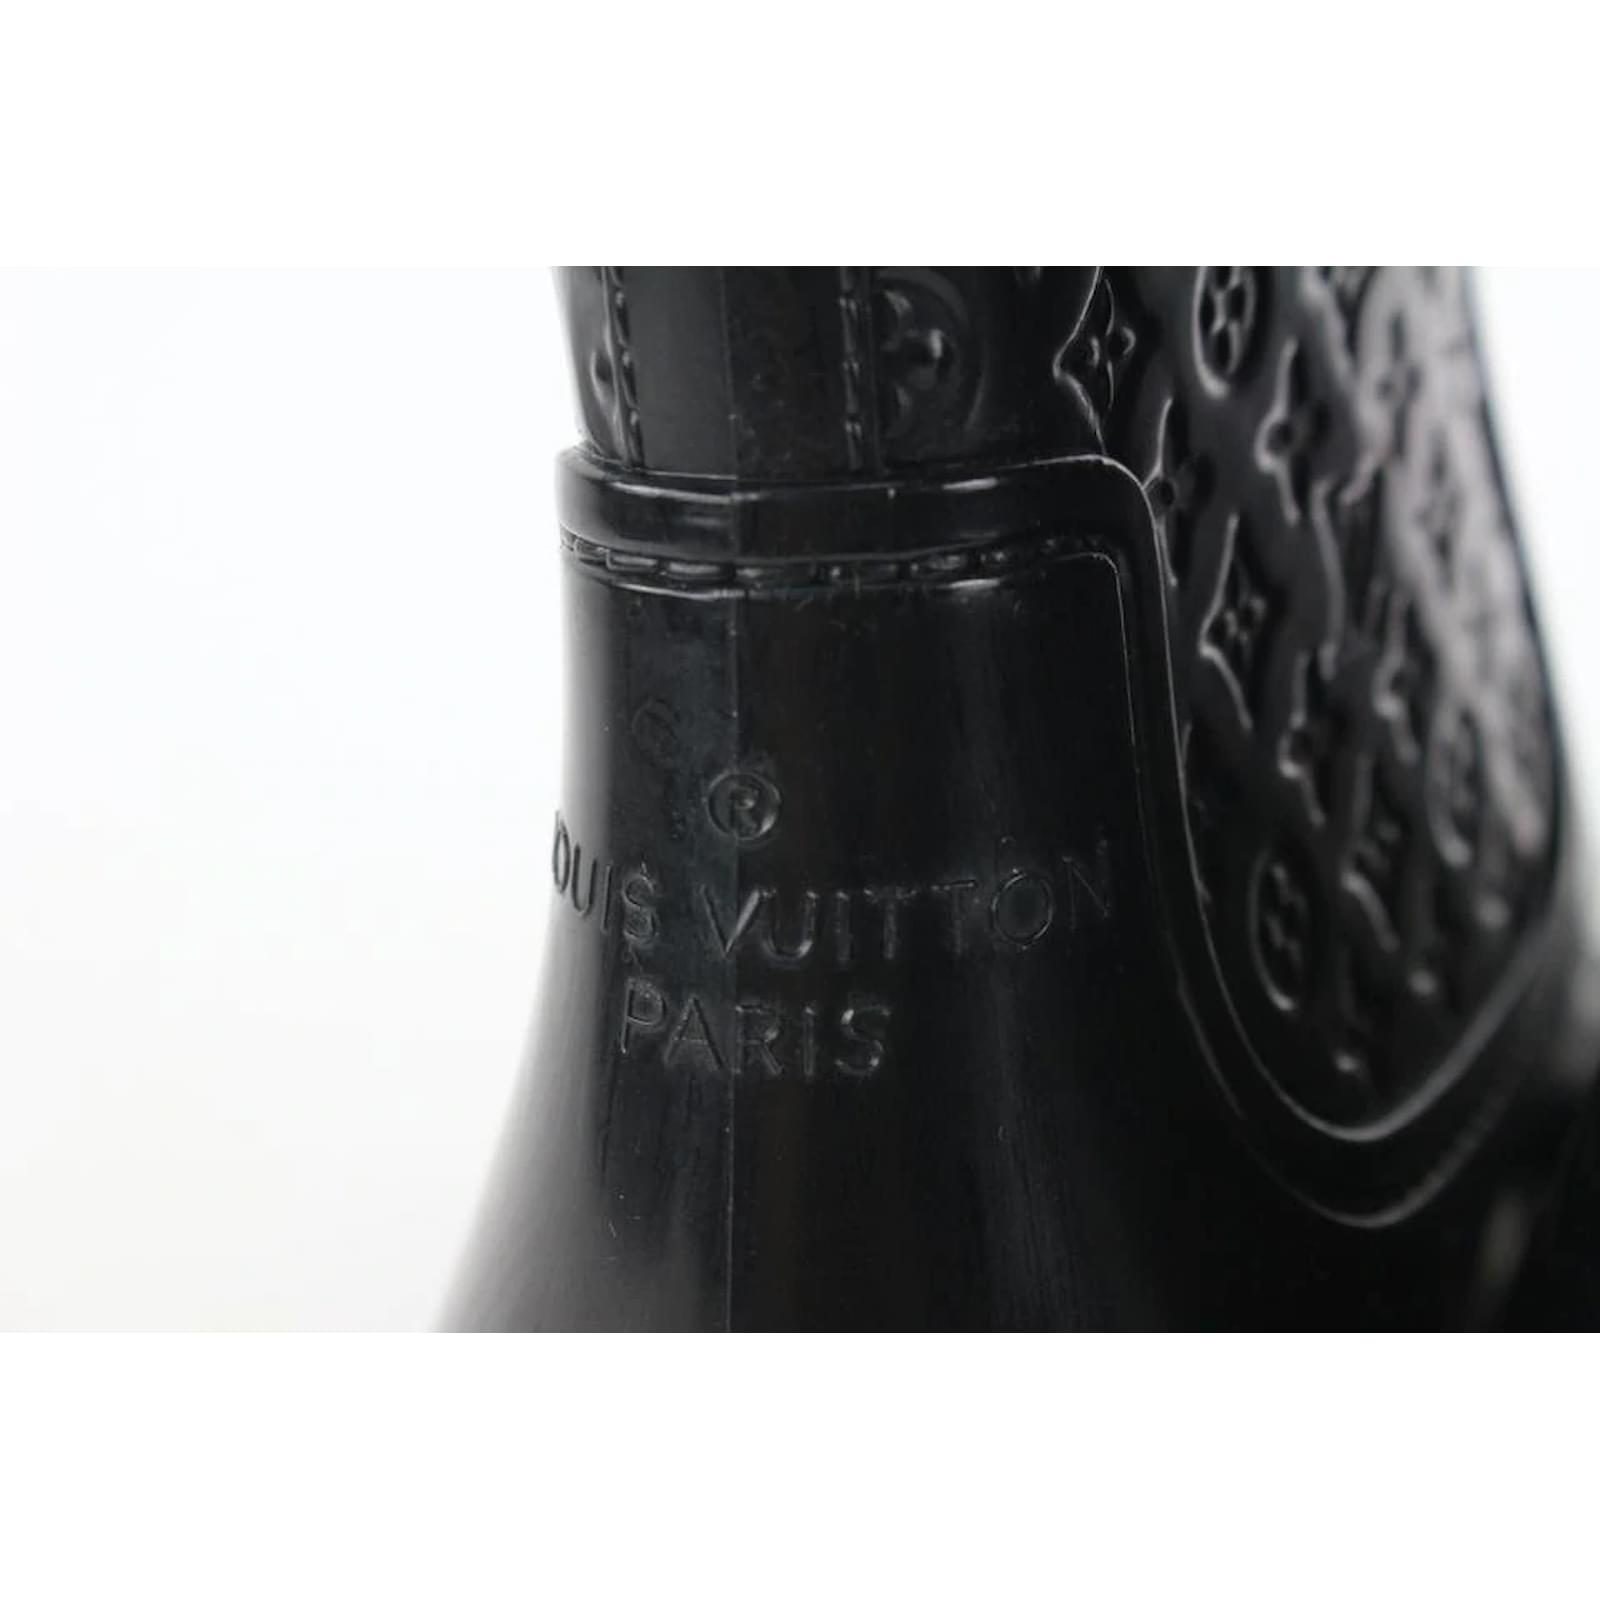 Boots Louis Vuitton Black size 39 EU in Rubber - 35719549